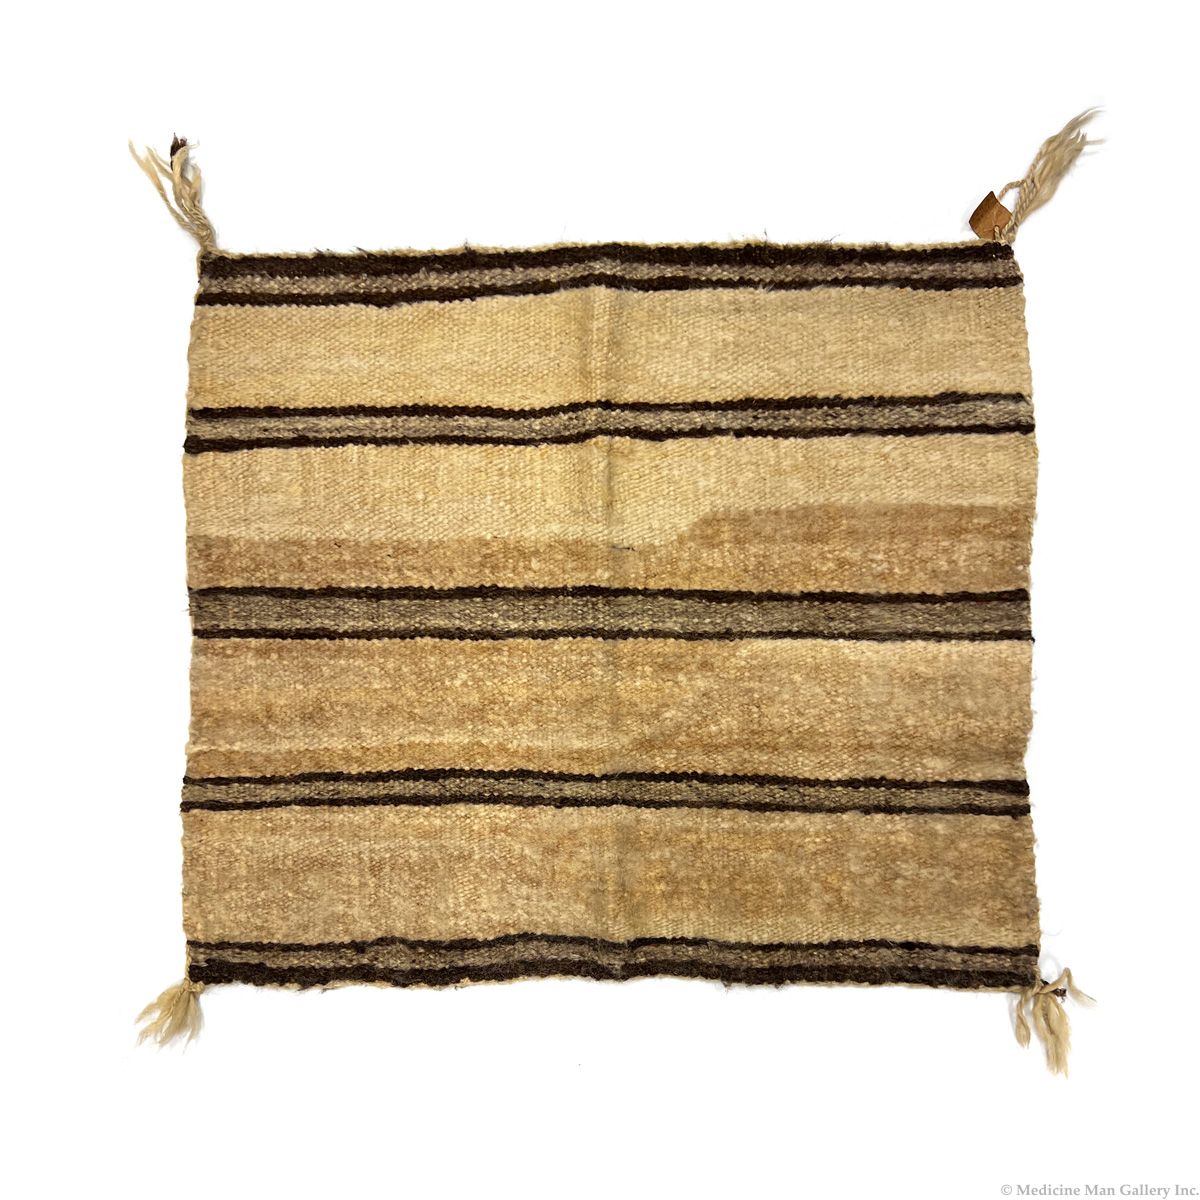 Navajo Single Saddle Blanket c. 1900s, 28" x 32.25" (T6480)